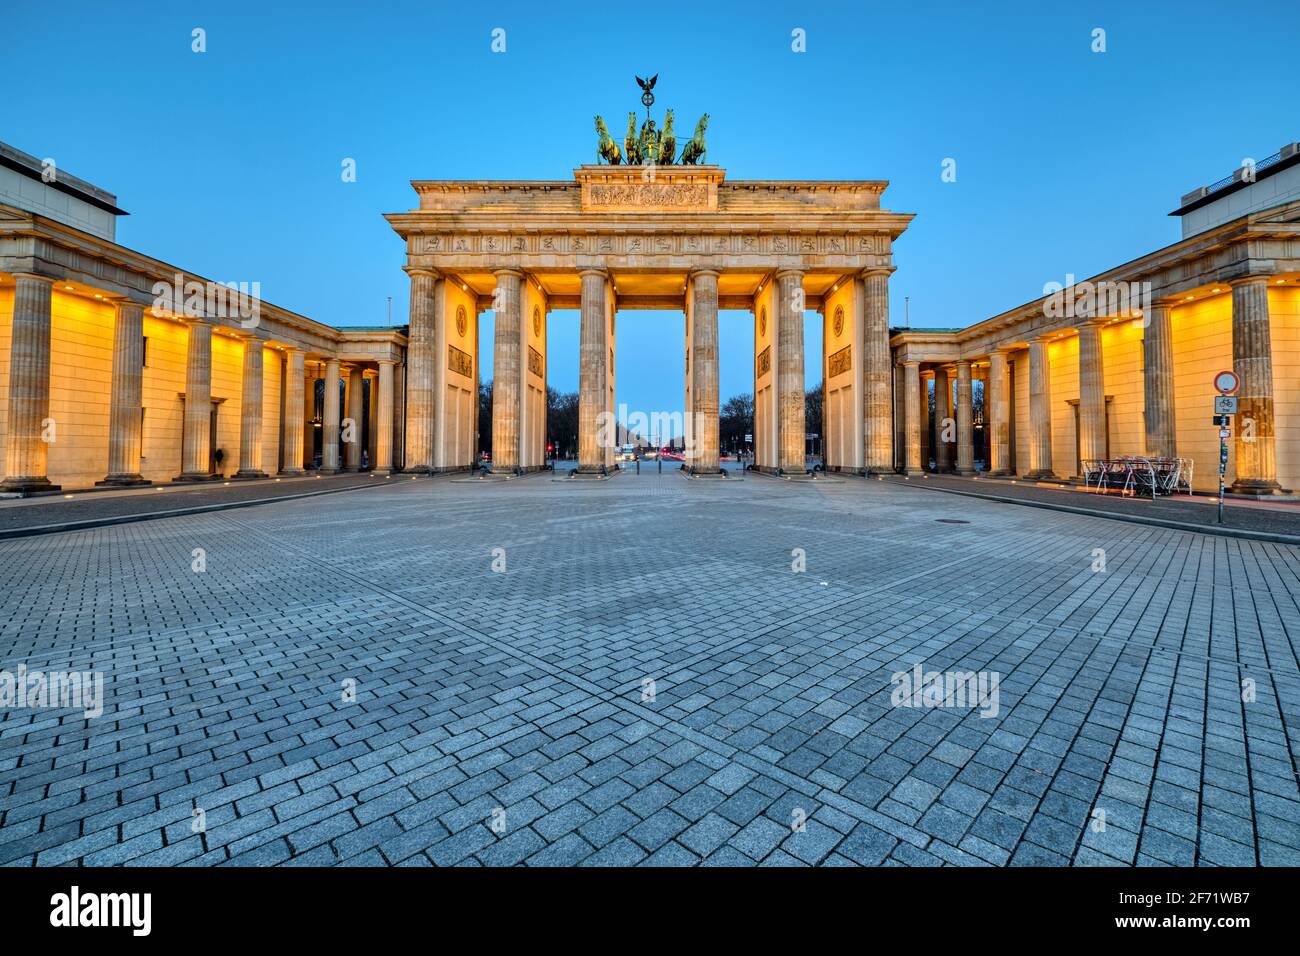 La porta di Brandeburgo illuminata a Berlino all'alba Foto Stock